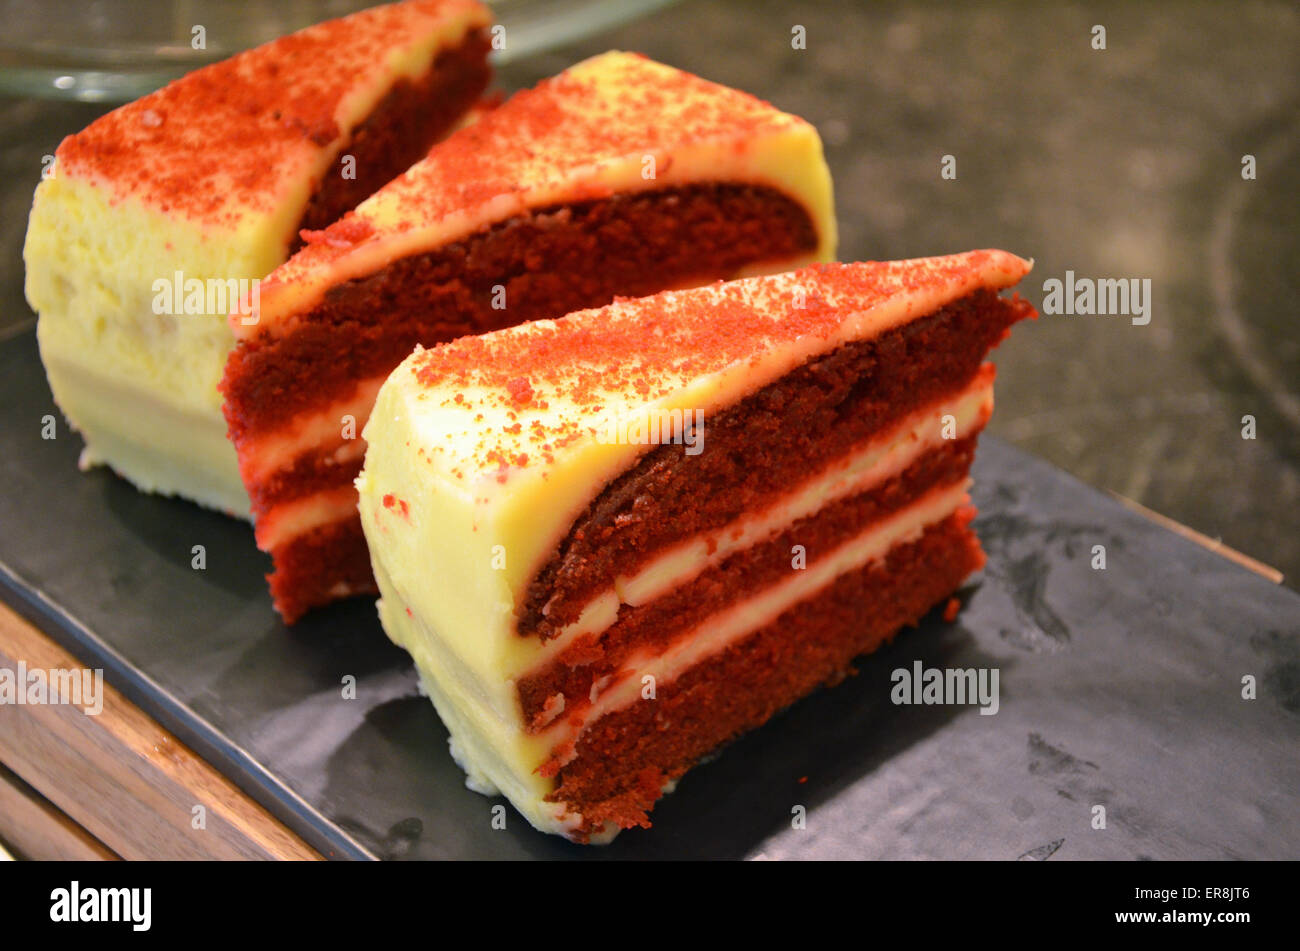 red velvet cake slices Stock Photo